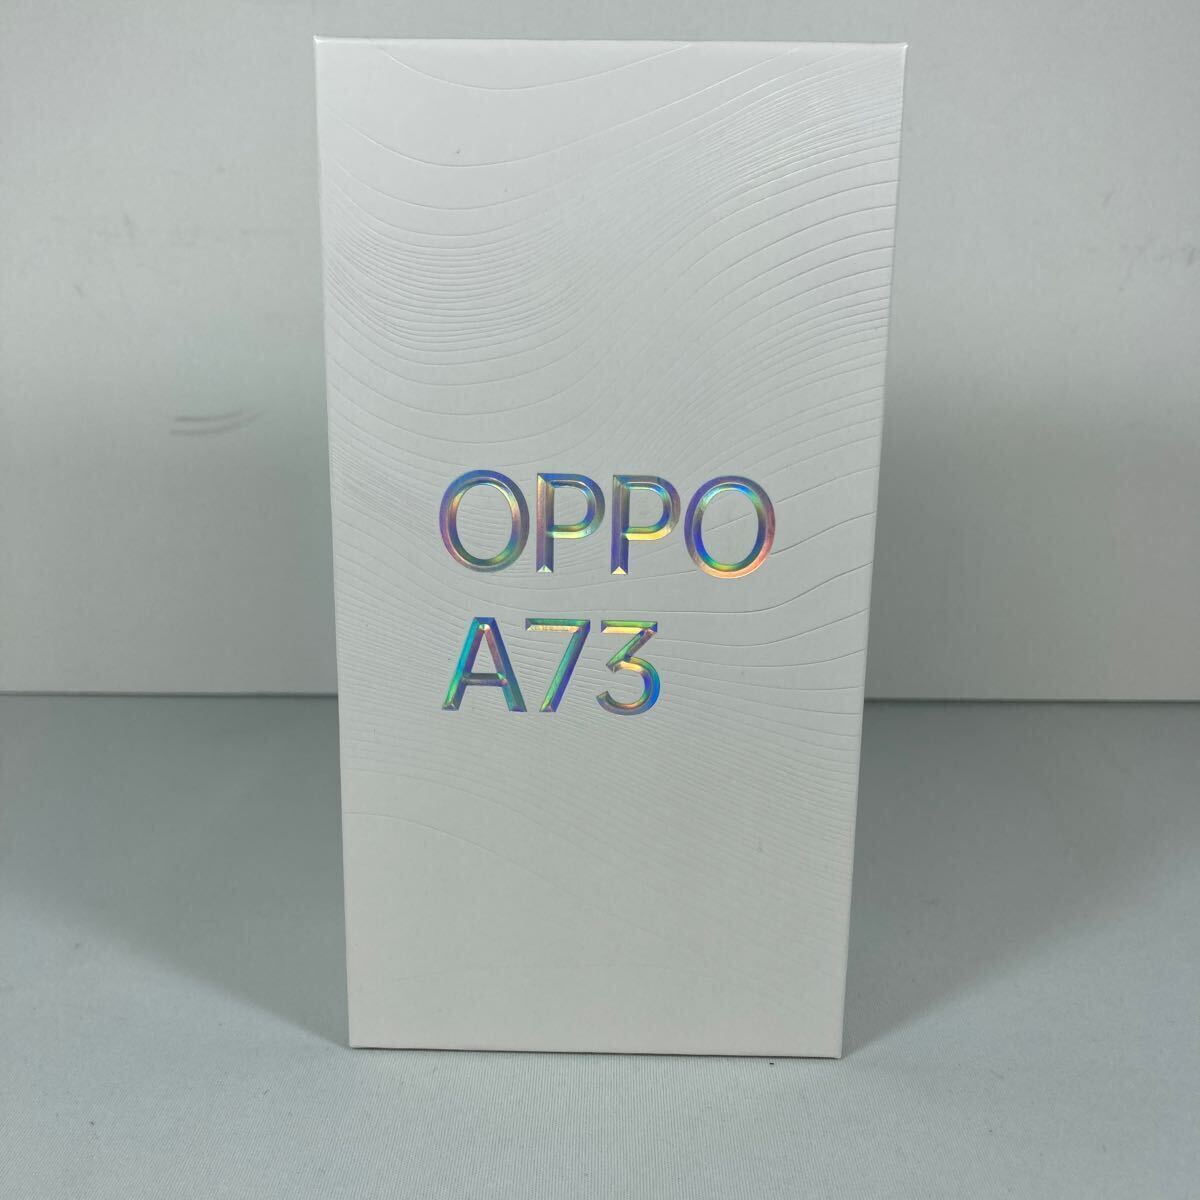 アンドロイドスマートフォン OPPO A73 CPH2099 ネービーブルー SIMフリー 64GB 楽天モバイルの画像1